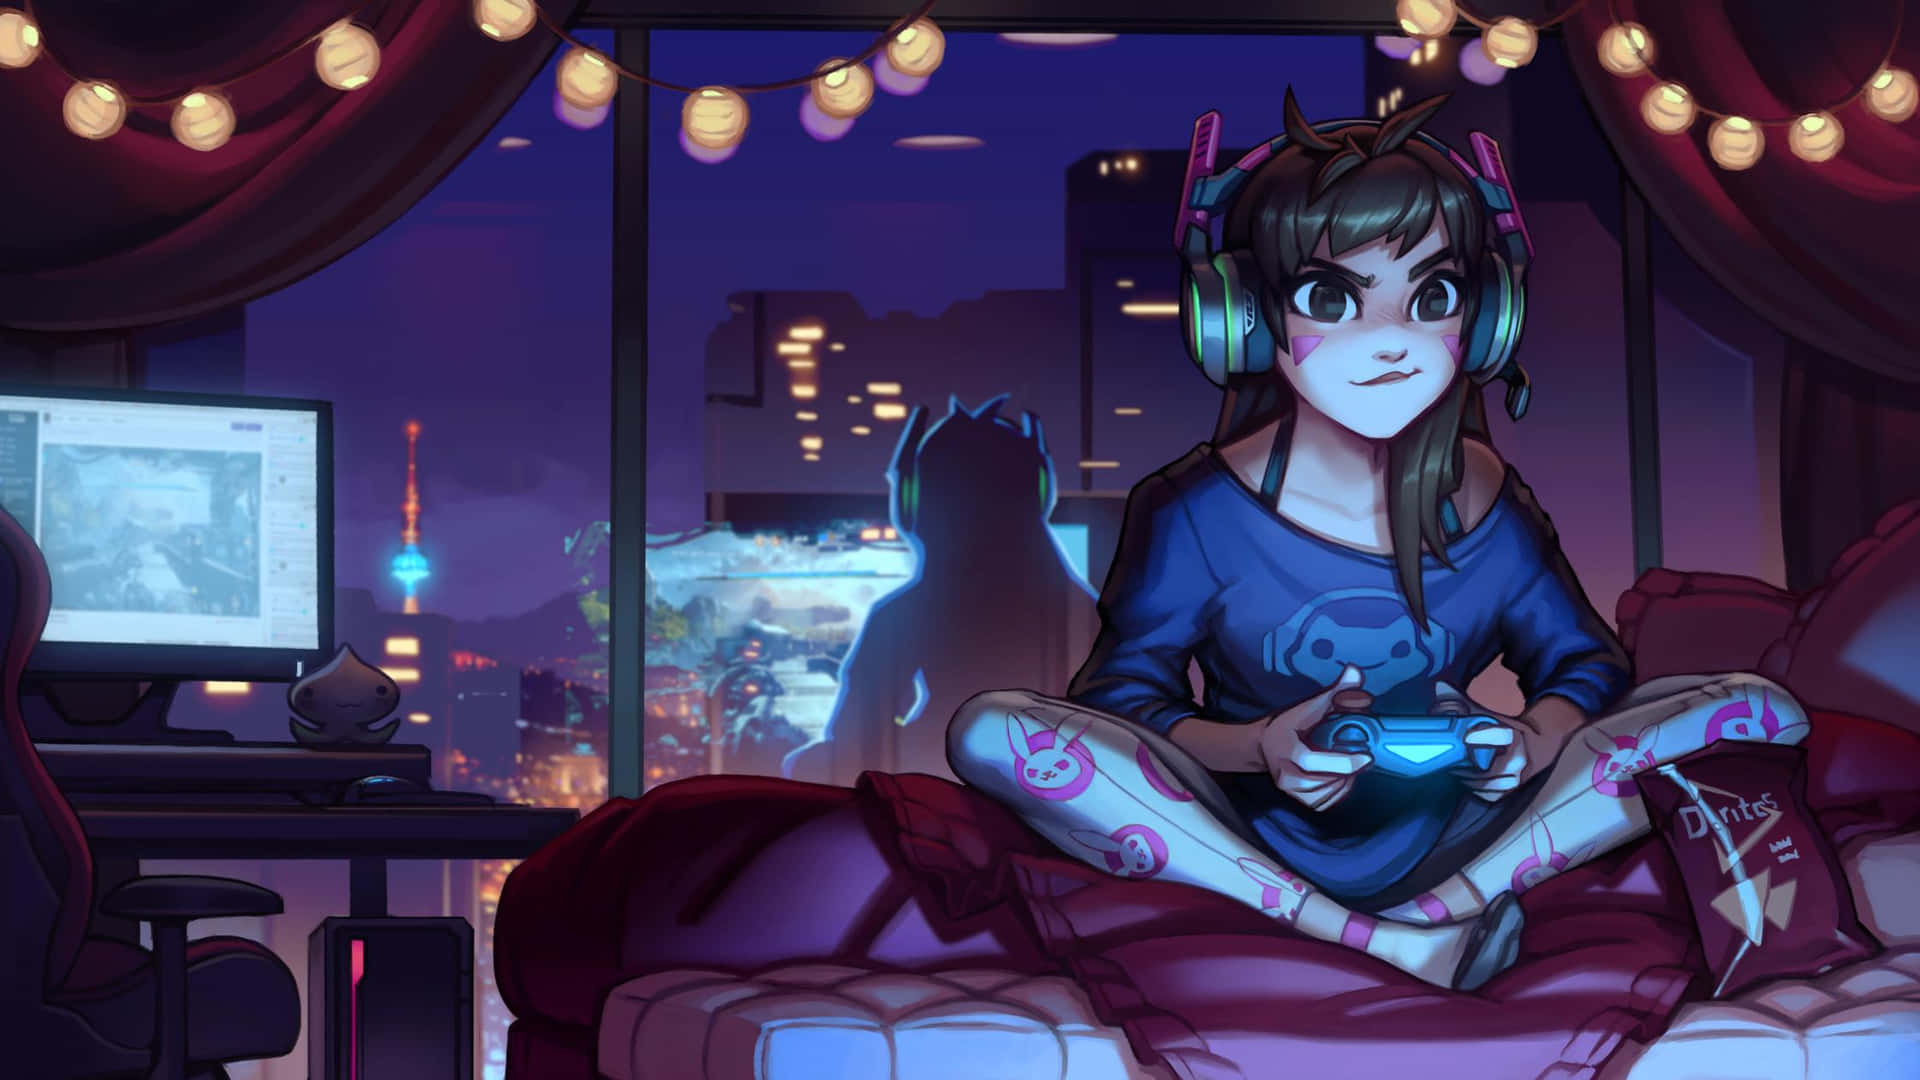 En pige sidder på en seng med en gaming kontrol i hendes hænder. Wallpaper